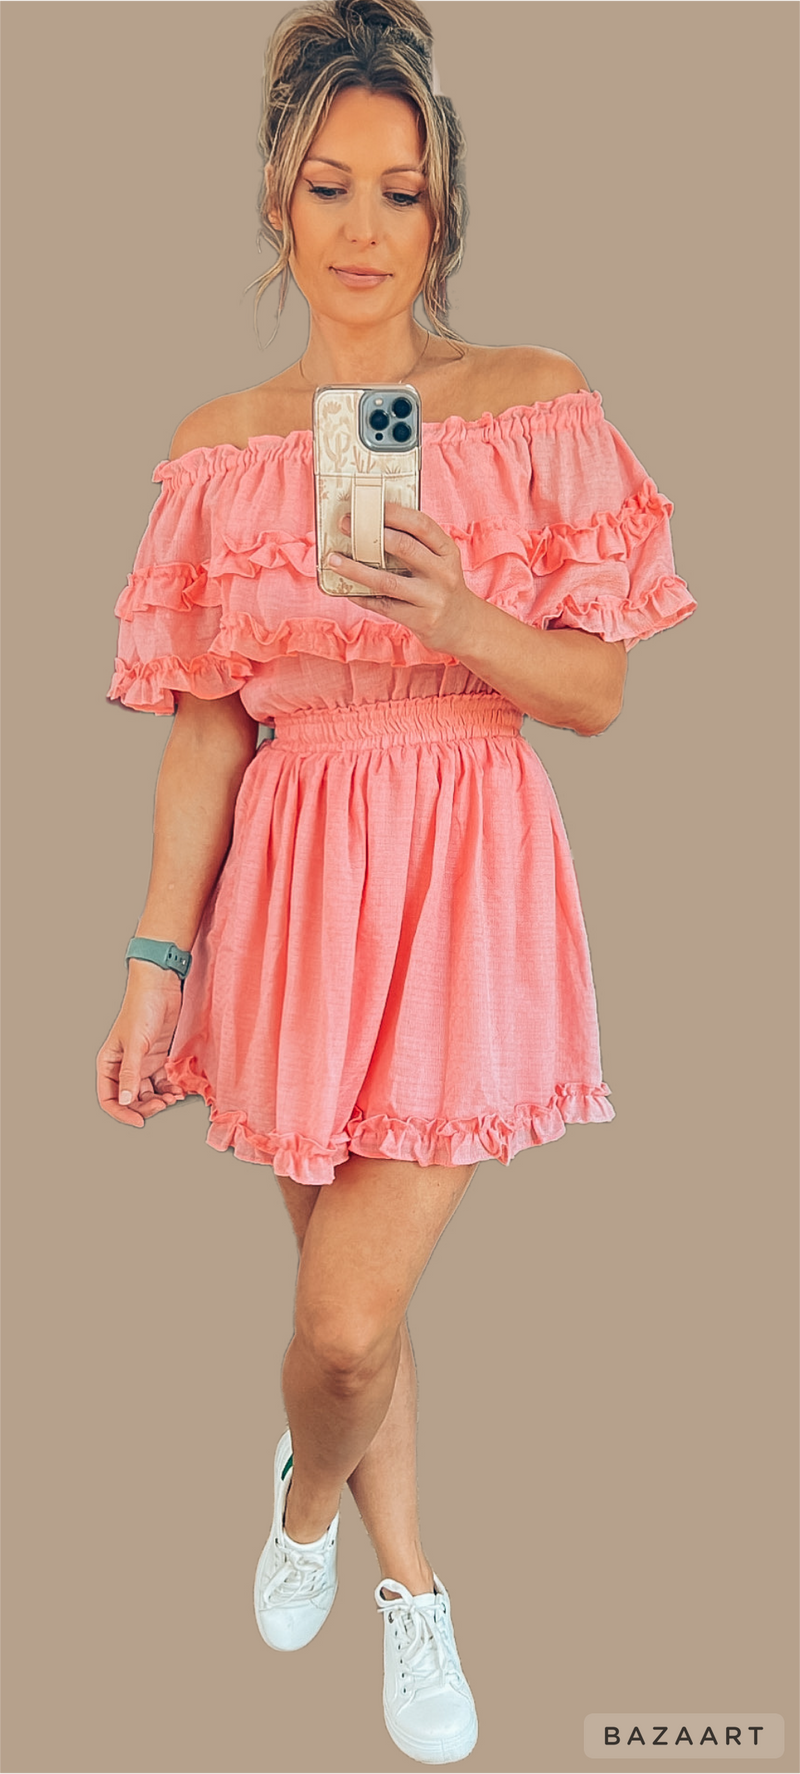 Pink Tiered Mini Dress